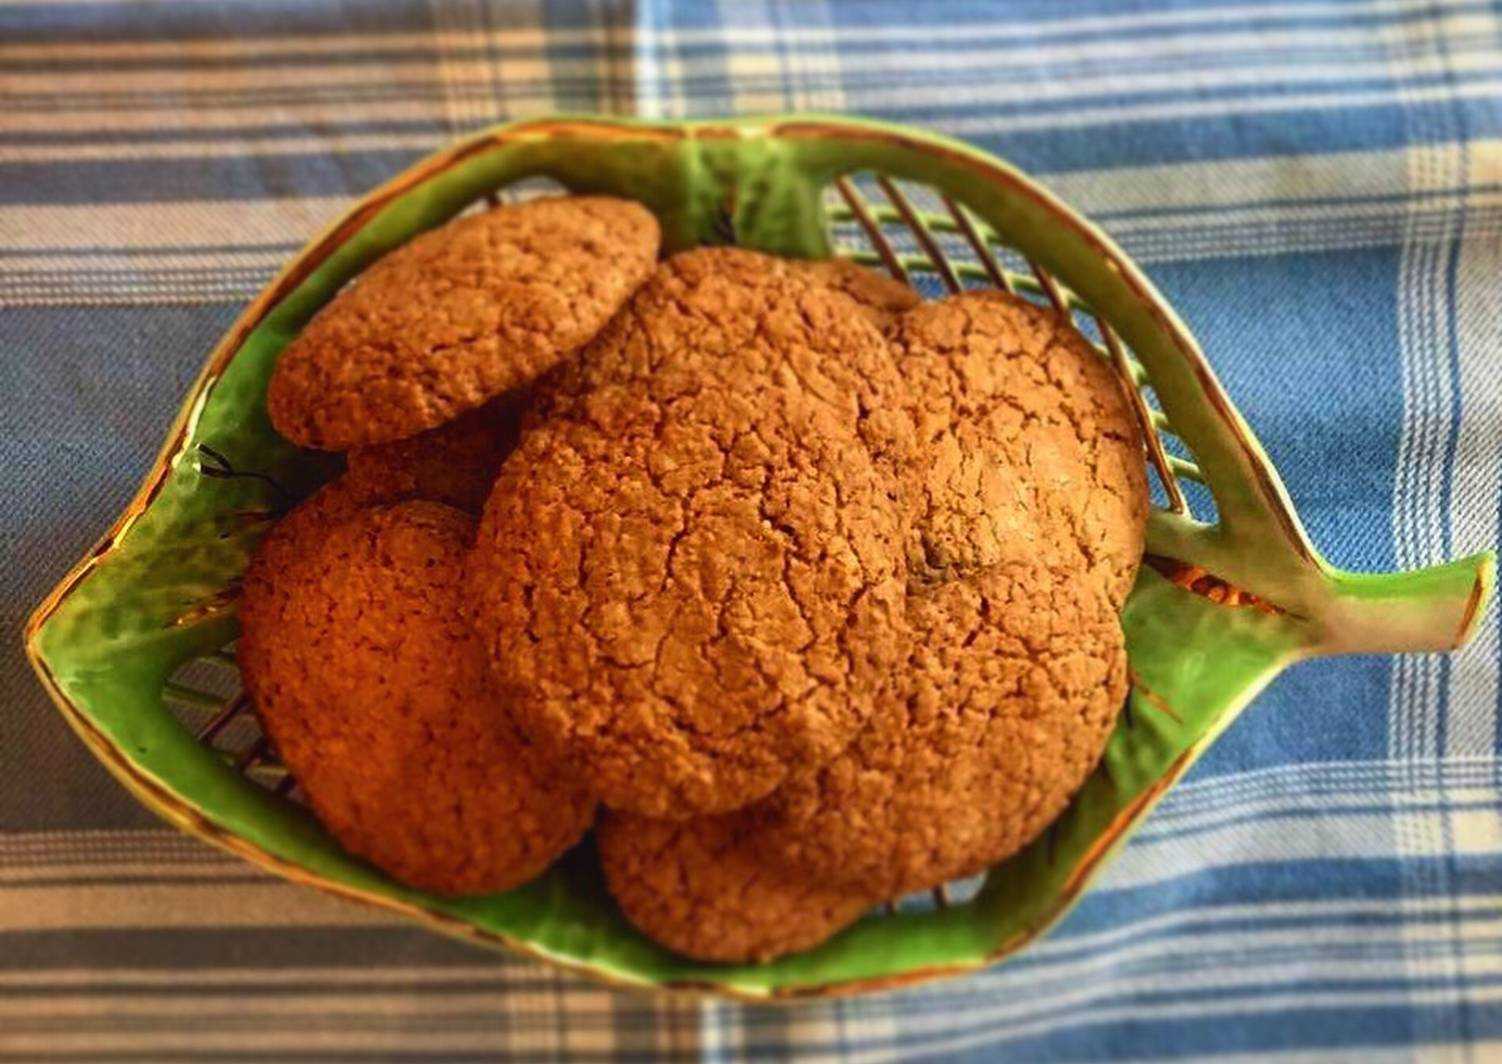 Низкокалорийное овсяное печенье для правильного питания: польза, рецепты приготовления